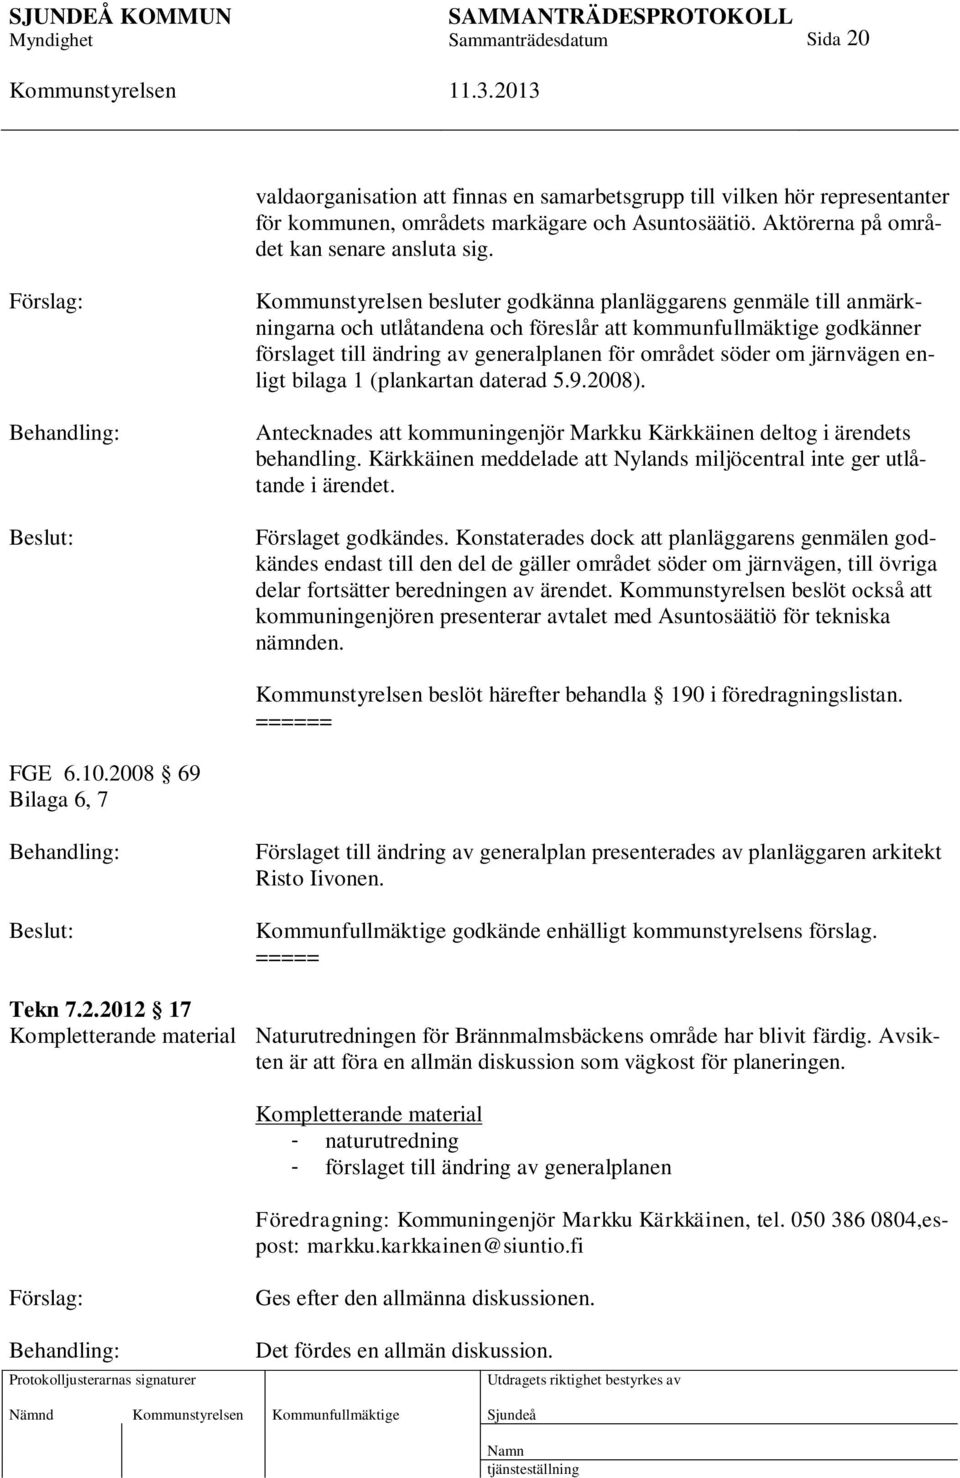 järnvägen enligt bilaga 1 (plankartan daterad 5.9.2008). Antecknades att kommuningenjör Markku Kärkkäinen deltog i ärendets behandling.